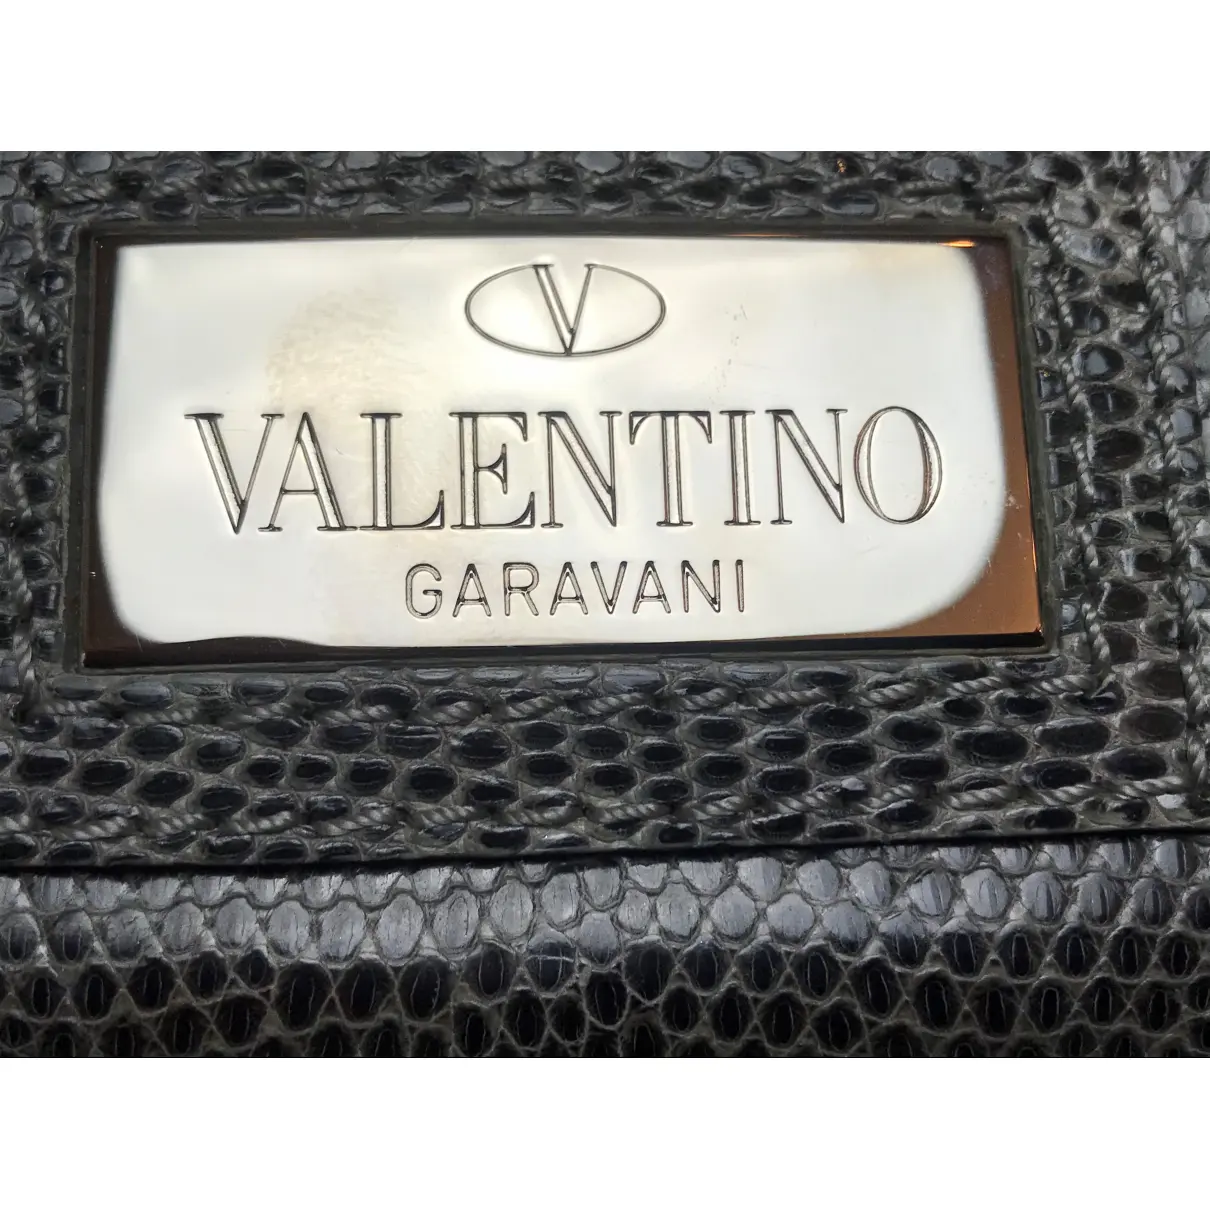 Lizard handbag Valentino Garavani